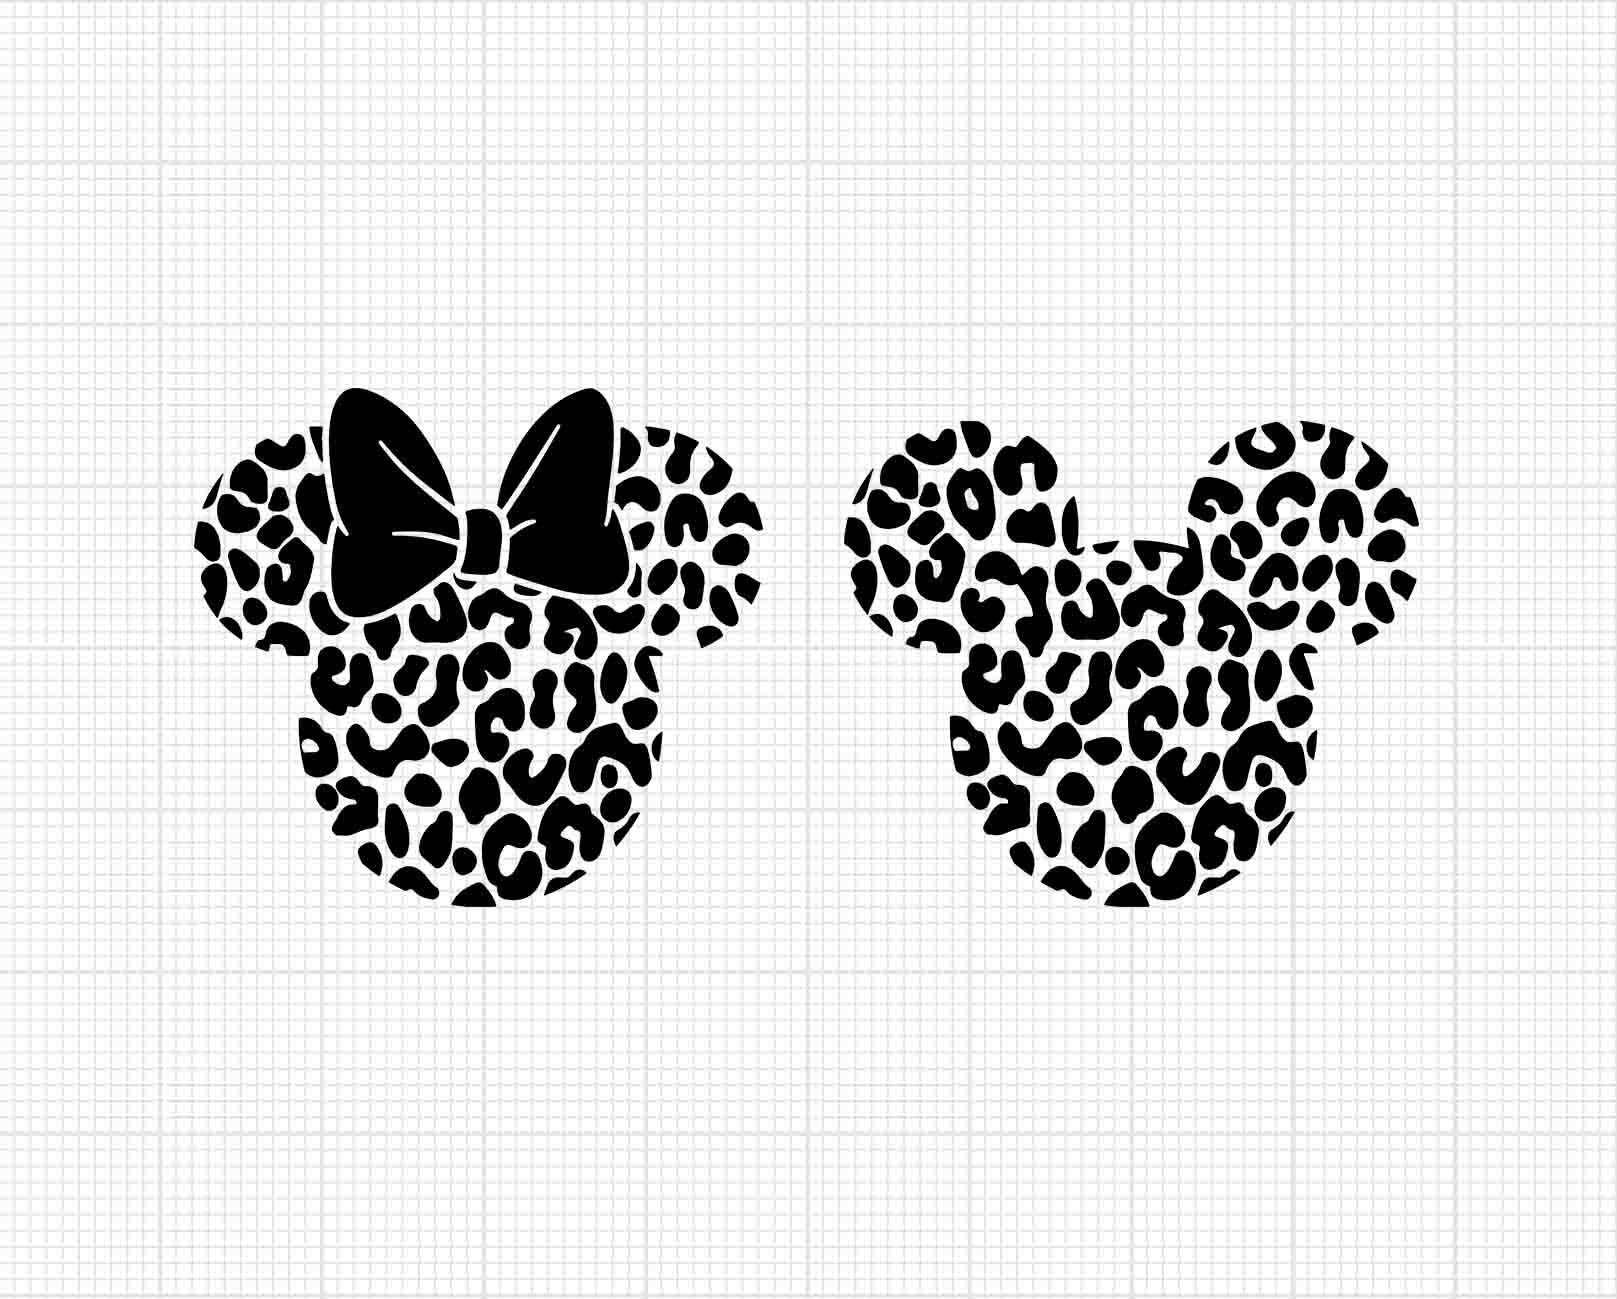 Baby Minnie Mouse Louis Vuitton SVG, Minnie Mouse SVG, Disney Mouse SVG -  Premium & Original SVG Cut Files